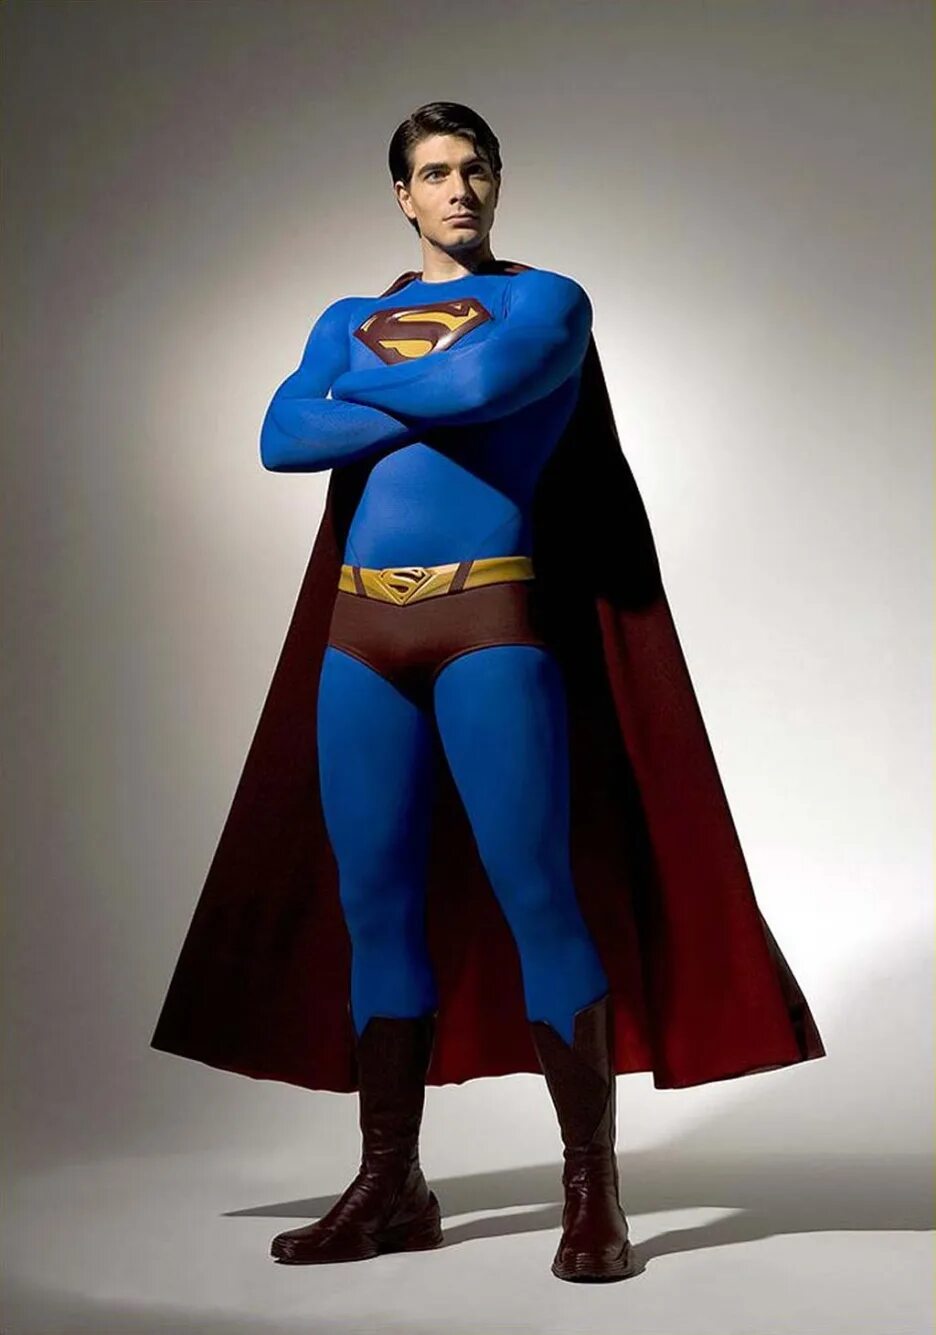 Тин мен. Brandon Routh Супермен. Возвращение Супермена Брэндон рут. Брэндон рут Супермен 2006. Супермен Возвращение 2017.